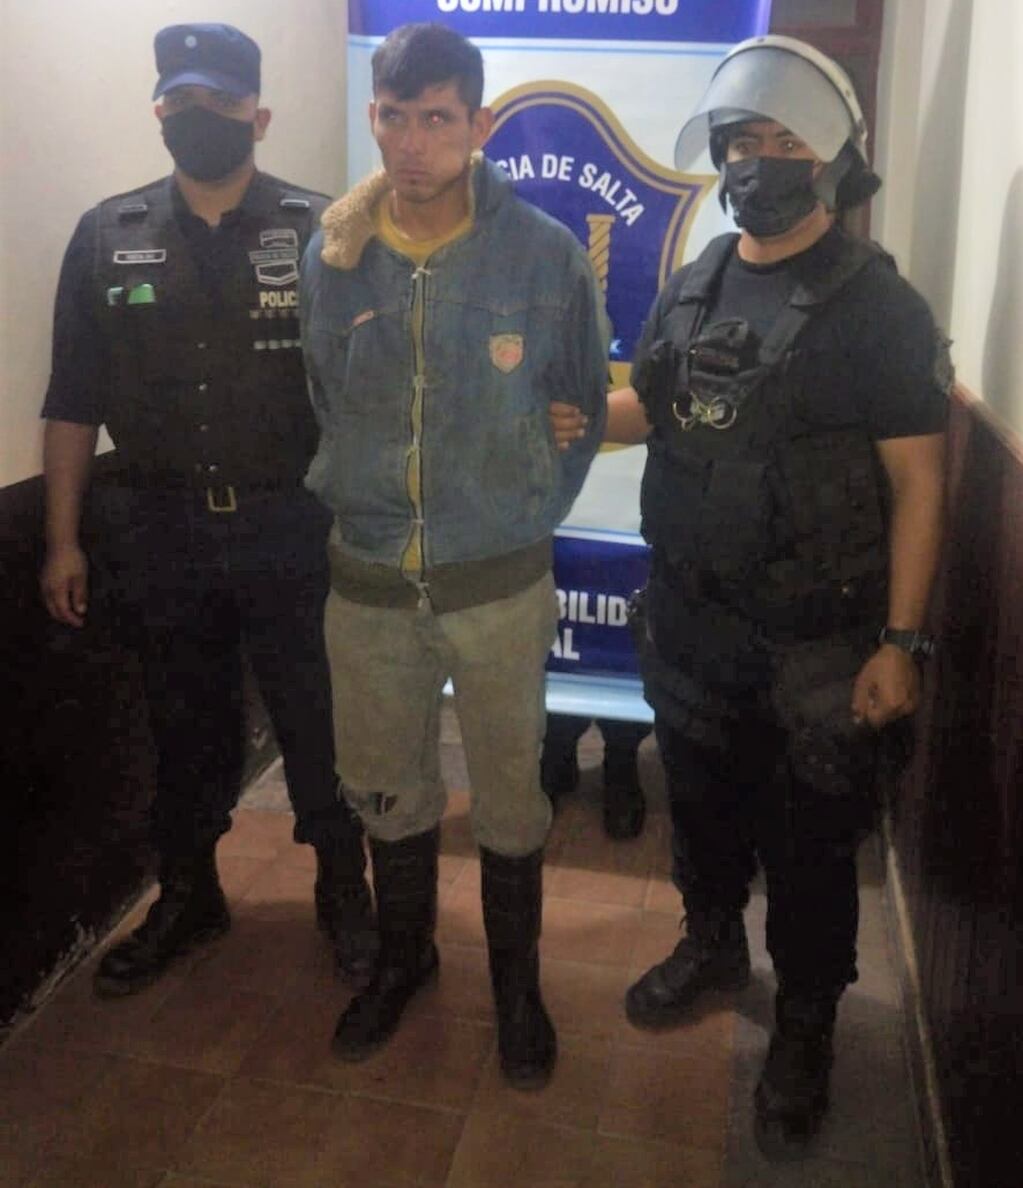 El fugitivo había llegado hasta el domicilio de sus familiares residentes en Apolinario Saravia, provincia de Salta. Allí lo encontró la Policía local, que de inmediato puso al sujeto a disposición de sus colegas de Jujuy.